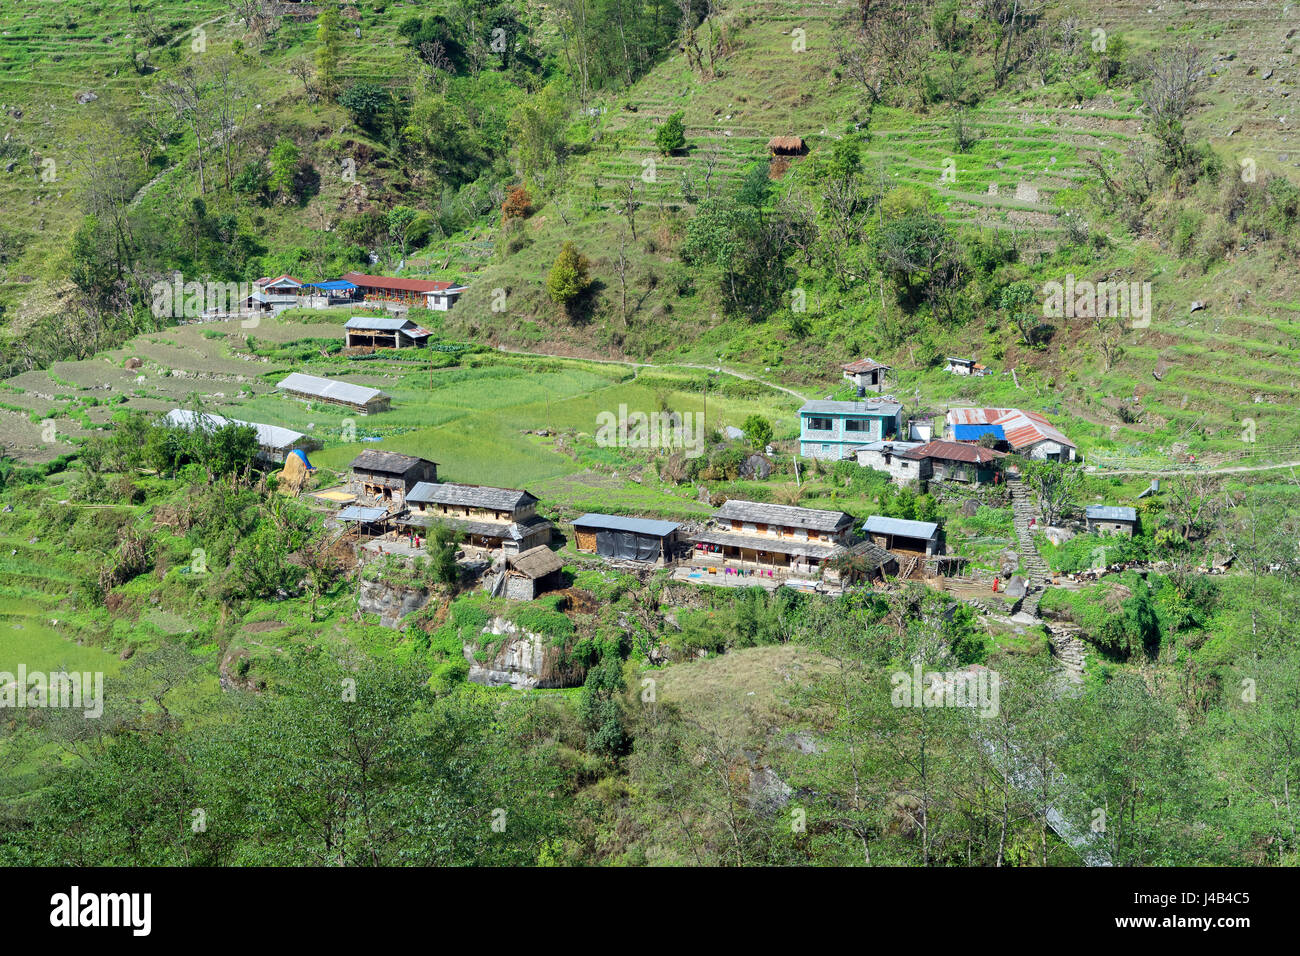 Les logements de l'agriculteur et guesthouse parmi les champs en terrasses dans la vallée de la modi Khola entre Landruk Ghandruk et région de l'Annapurna, au Népal. Banque D'Images